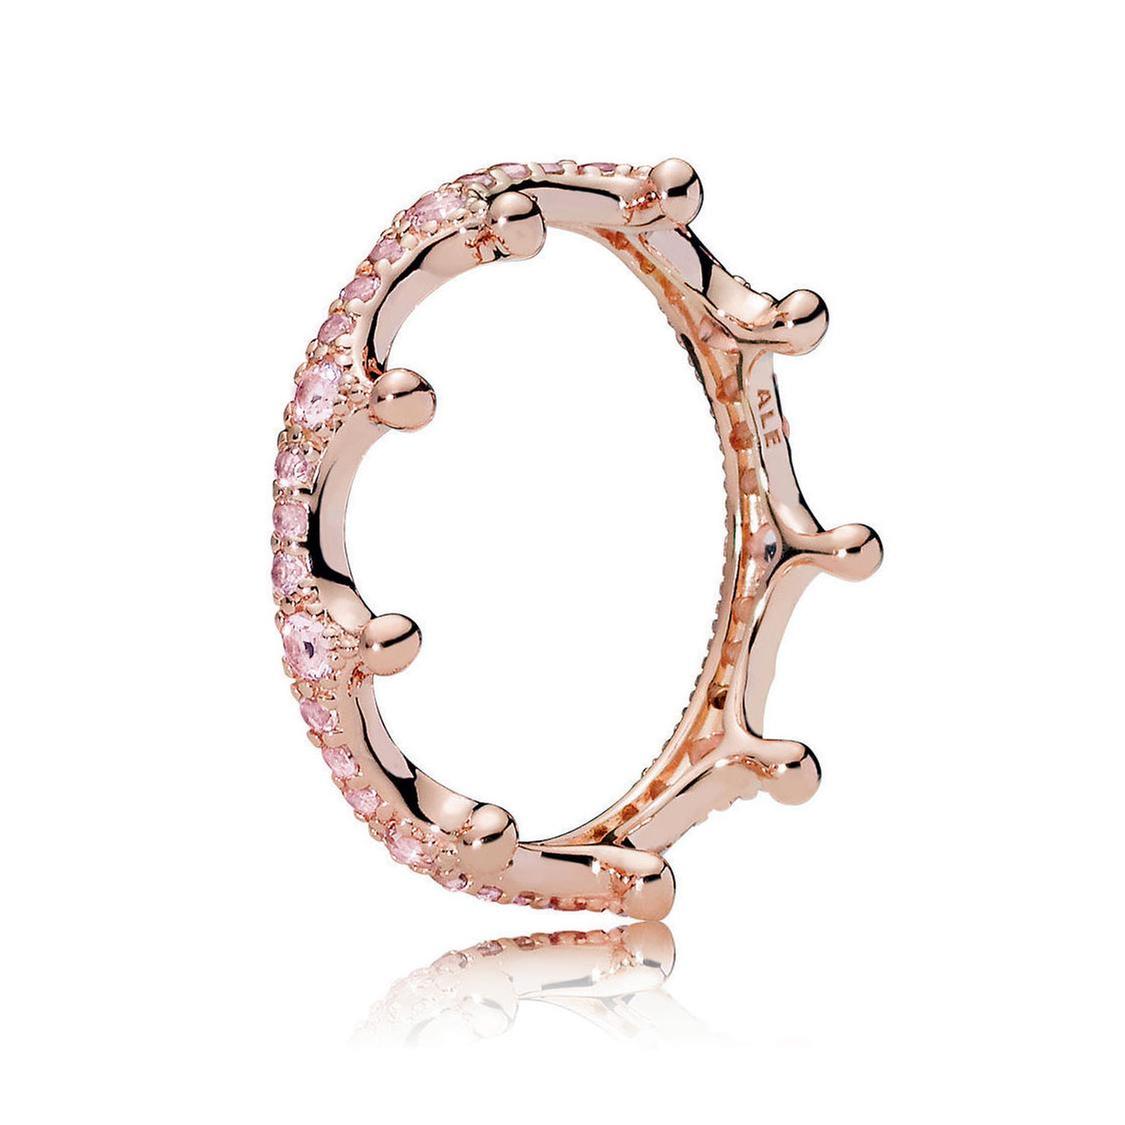 Pandora Pink Enchanted Crown Ring, Rose Gold-Plated - Size 8.5